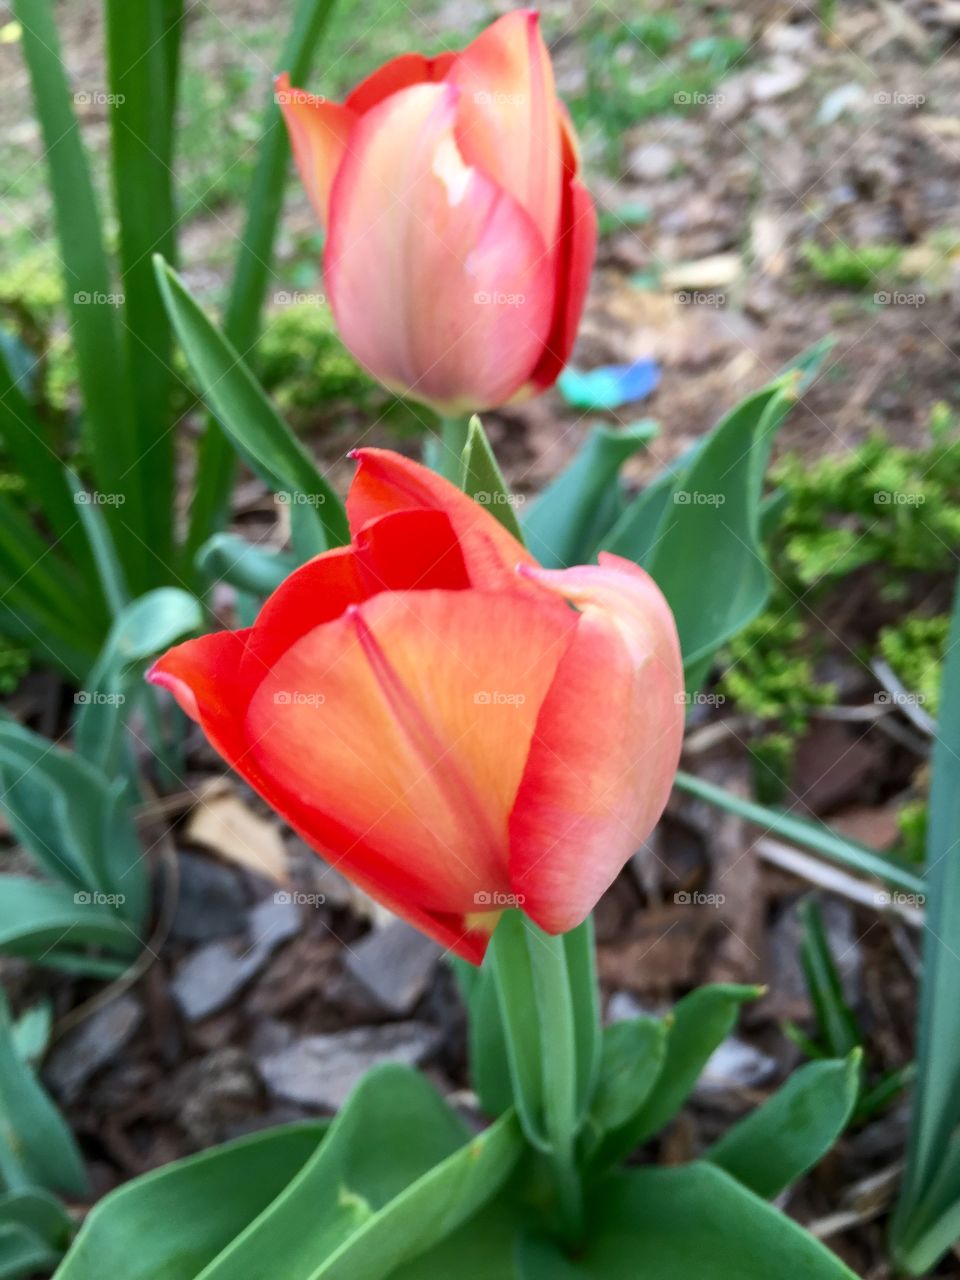 Peachy tulip pair